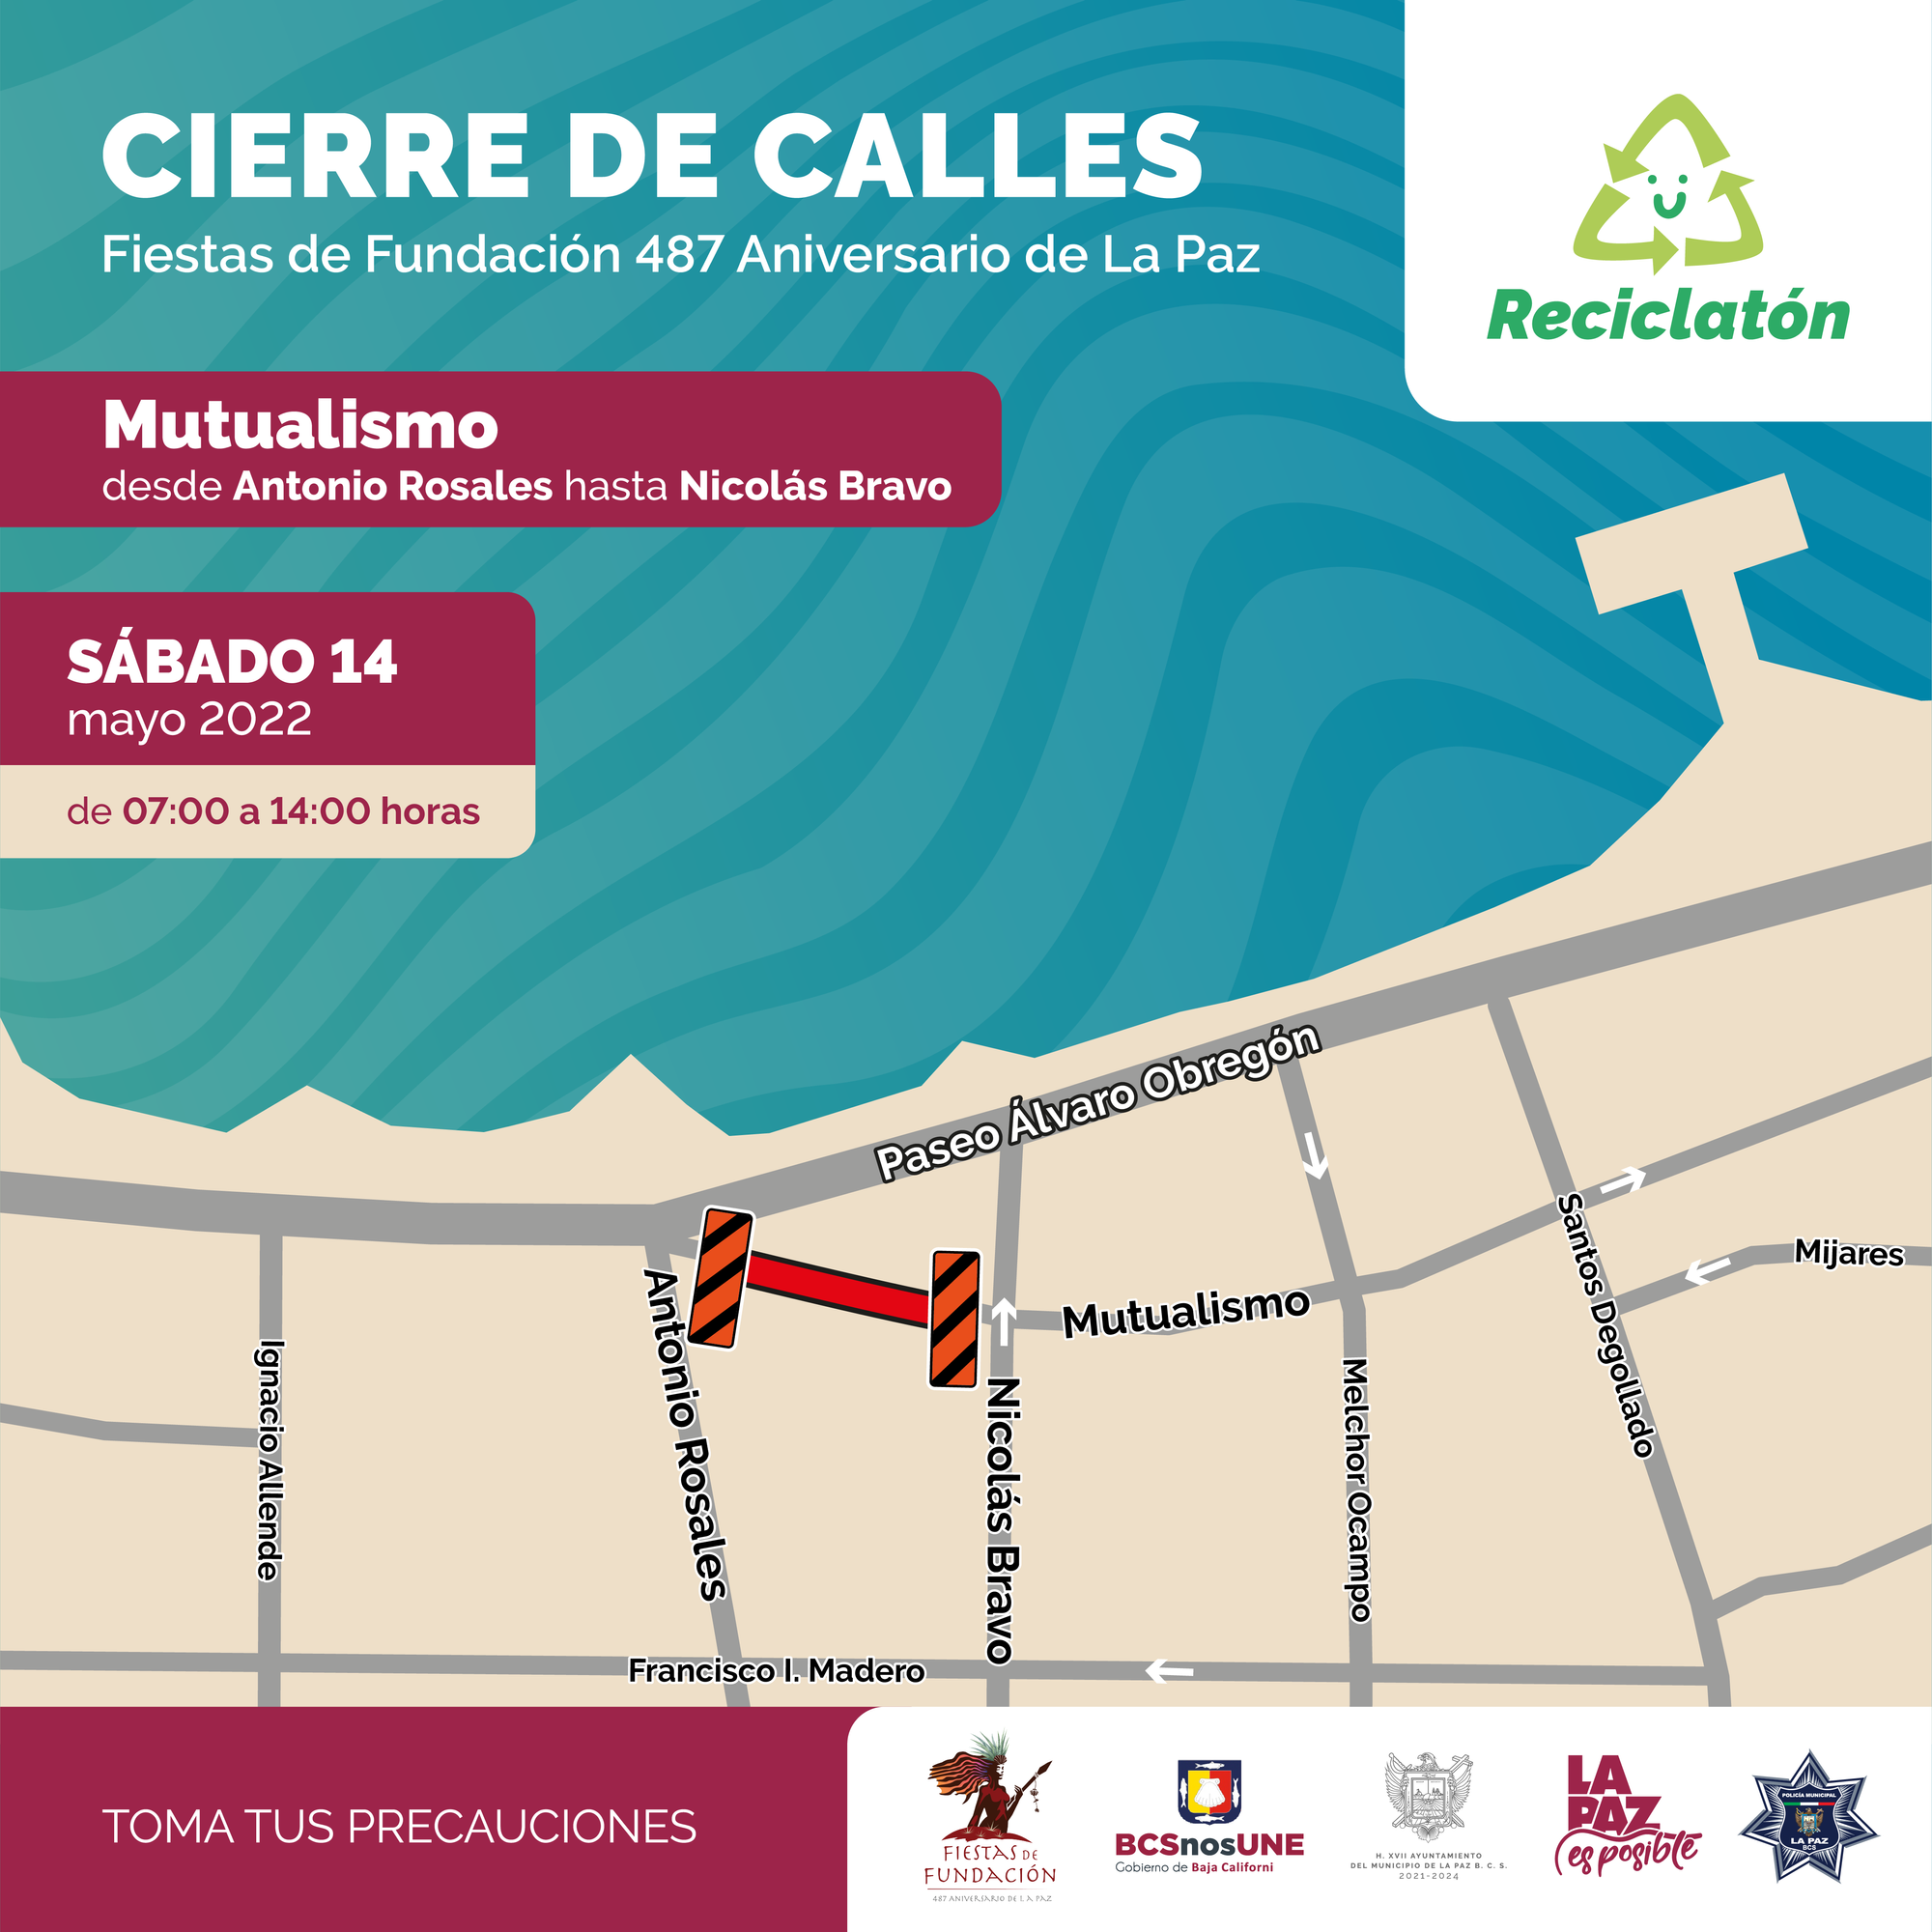 Cierre de calles por Reciclatón 2022 La Paz
y Noches Pegajosas